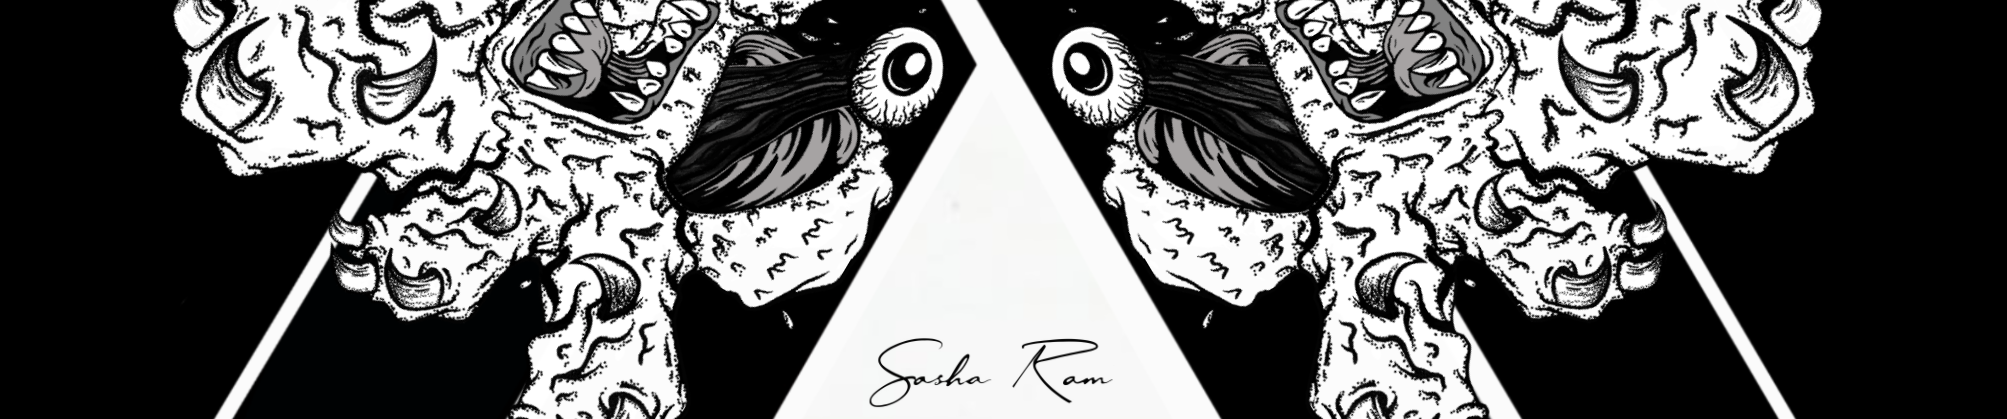 Banner de perfil de Sasha Ram